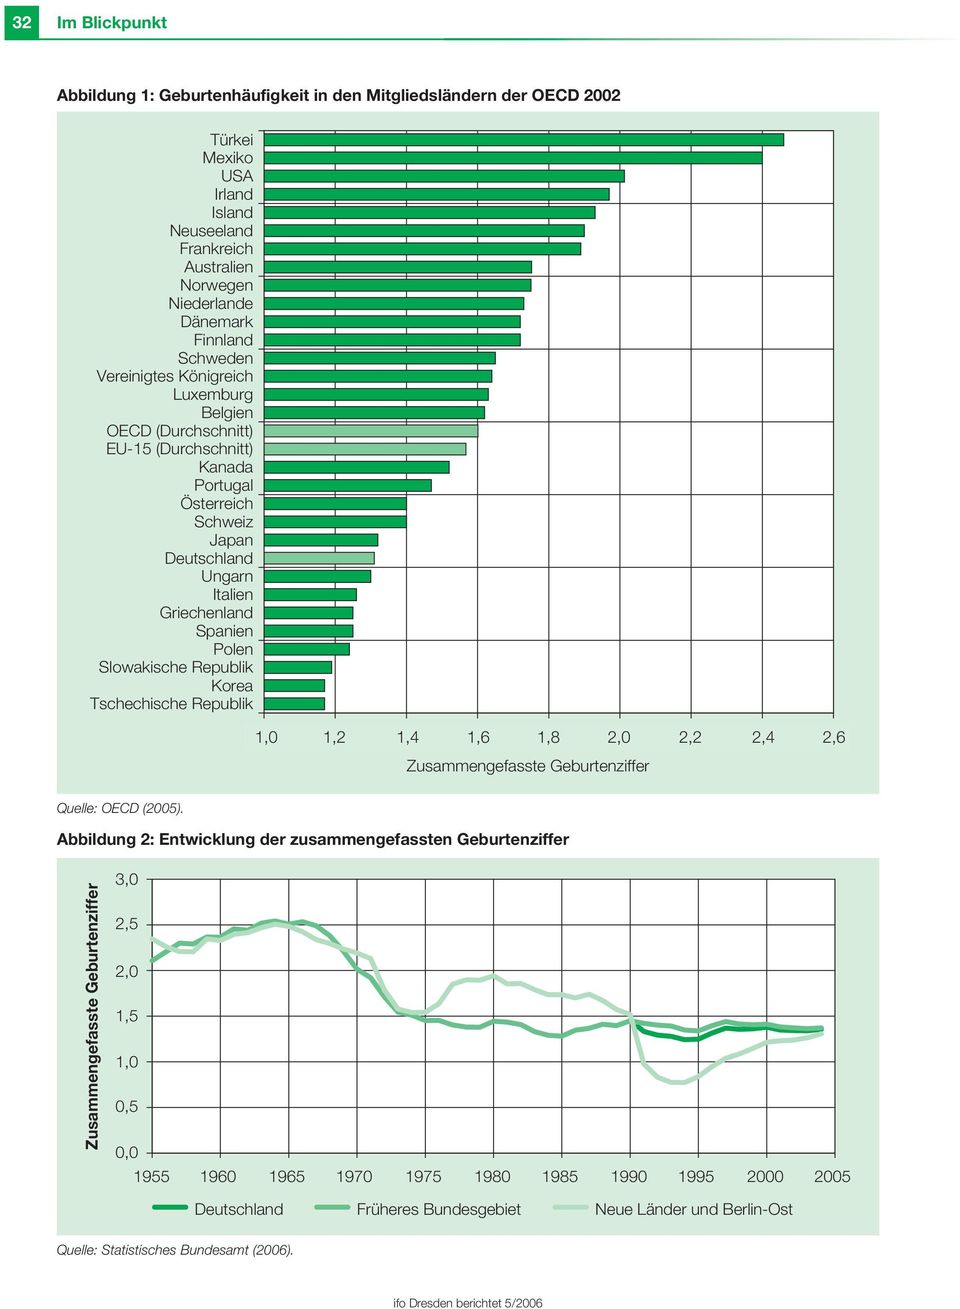 Korea Tschechische Republik 1,0 1,2 1,4 1,6 1,4 1,8 1,6 2,0 1,8 2,0 2,2 2,2 2,4 2,6 2,4 2,6 Zusammengefasste Geburtenziffer Quelle: OECD (2005).